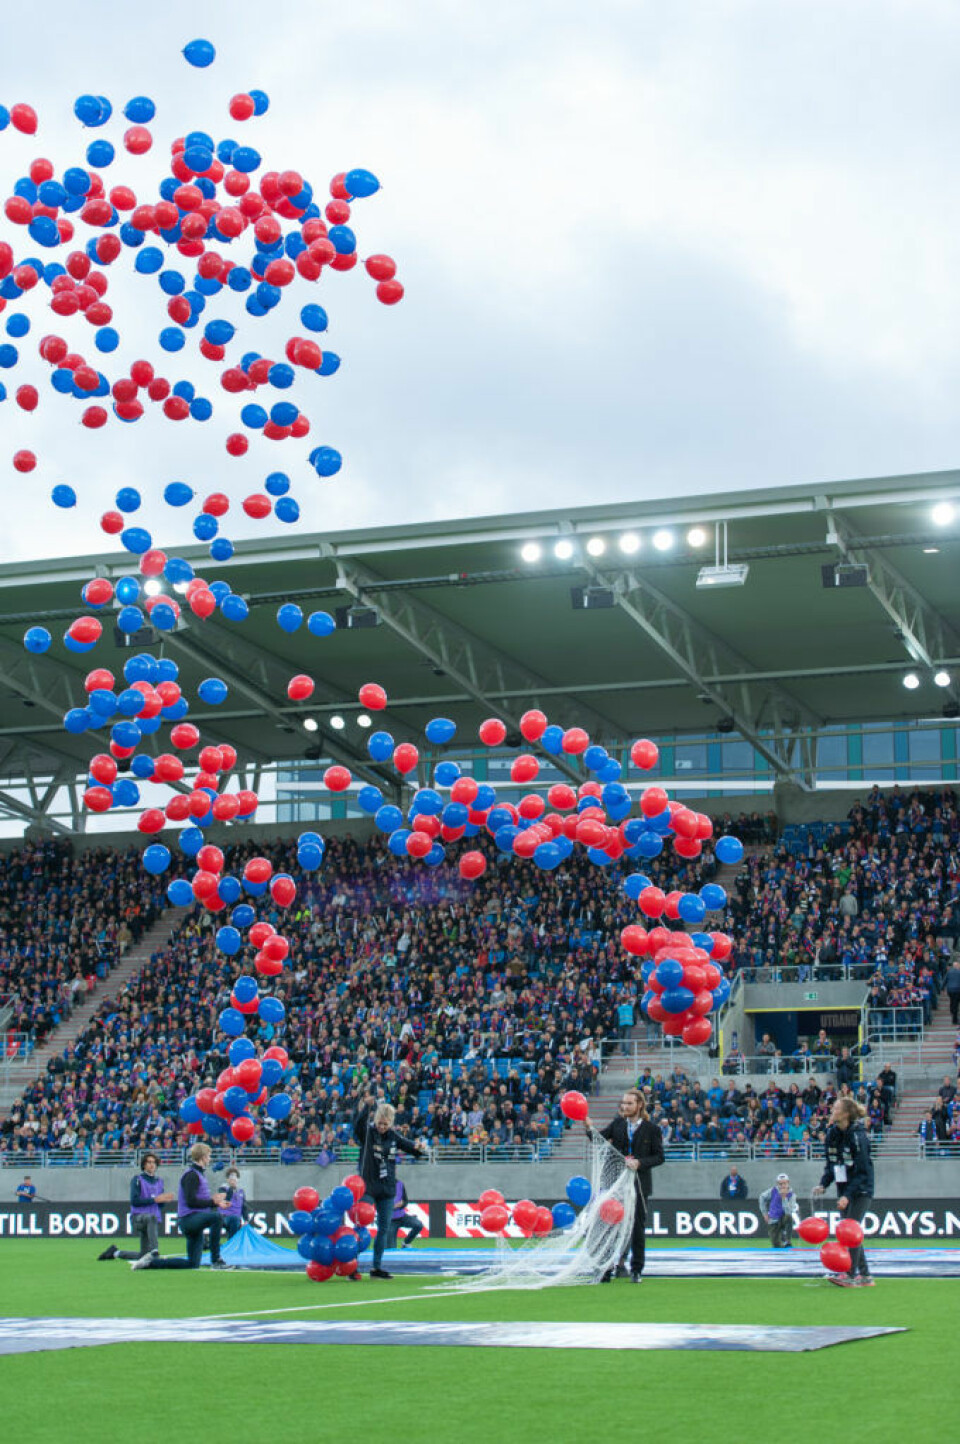 Ballongslipp_Vålerenga stadion. Foto: Anna Carlsson